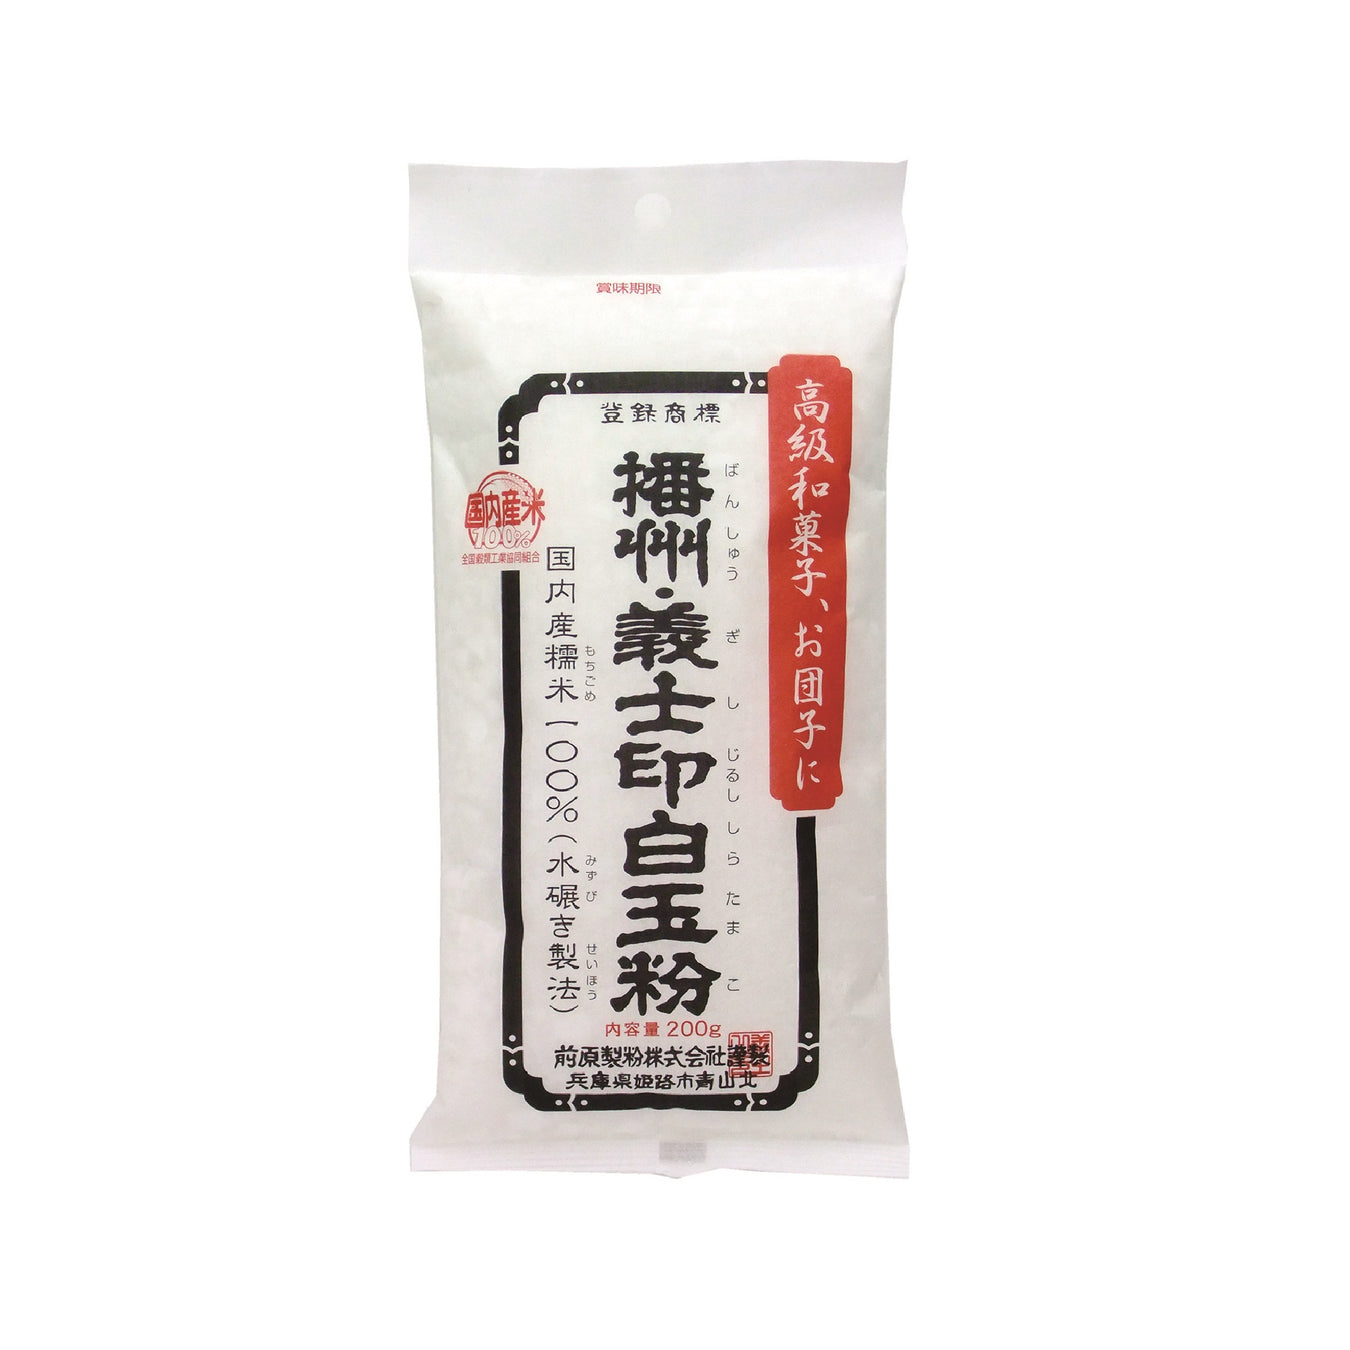 Rice (Koji / Flour / Mochi) & Other Flour